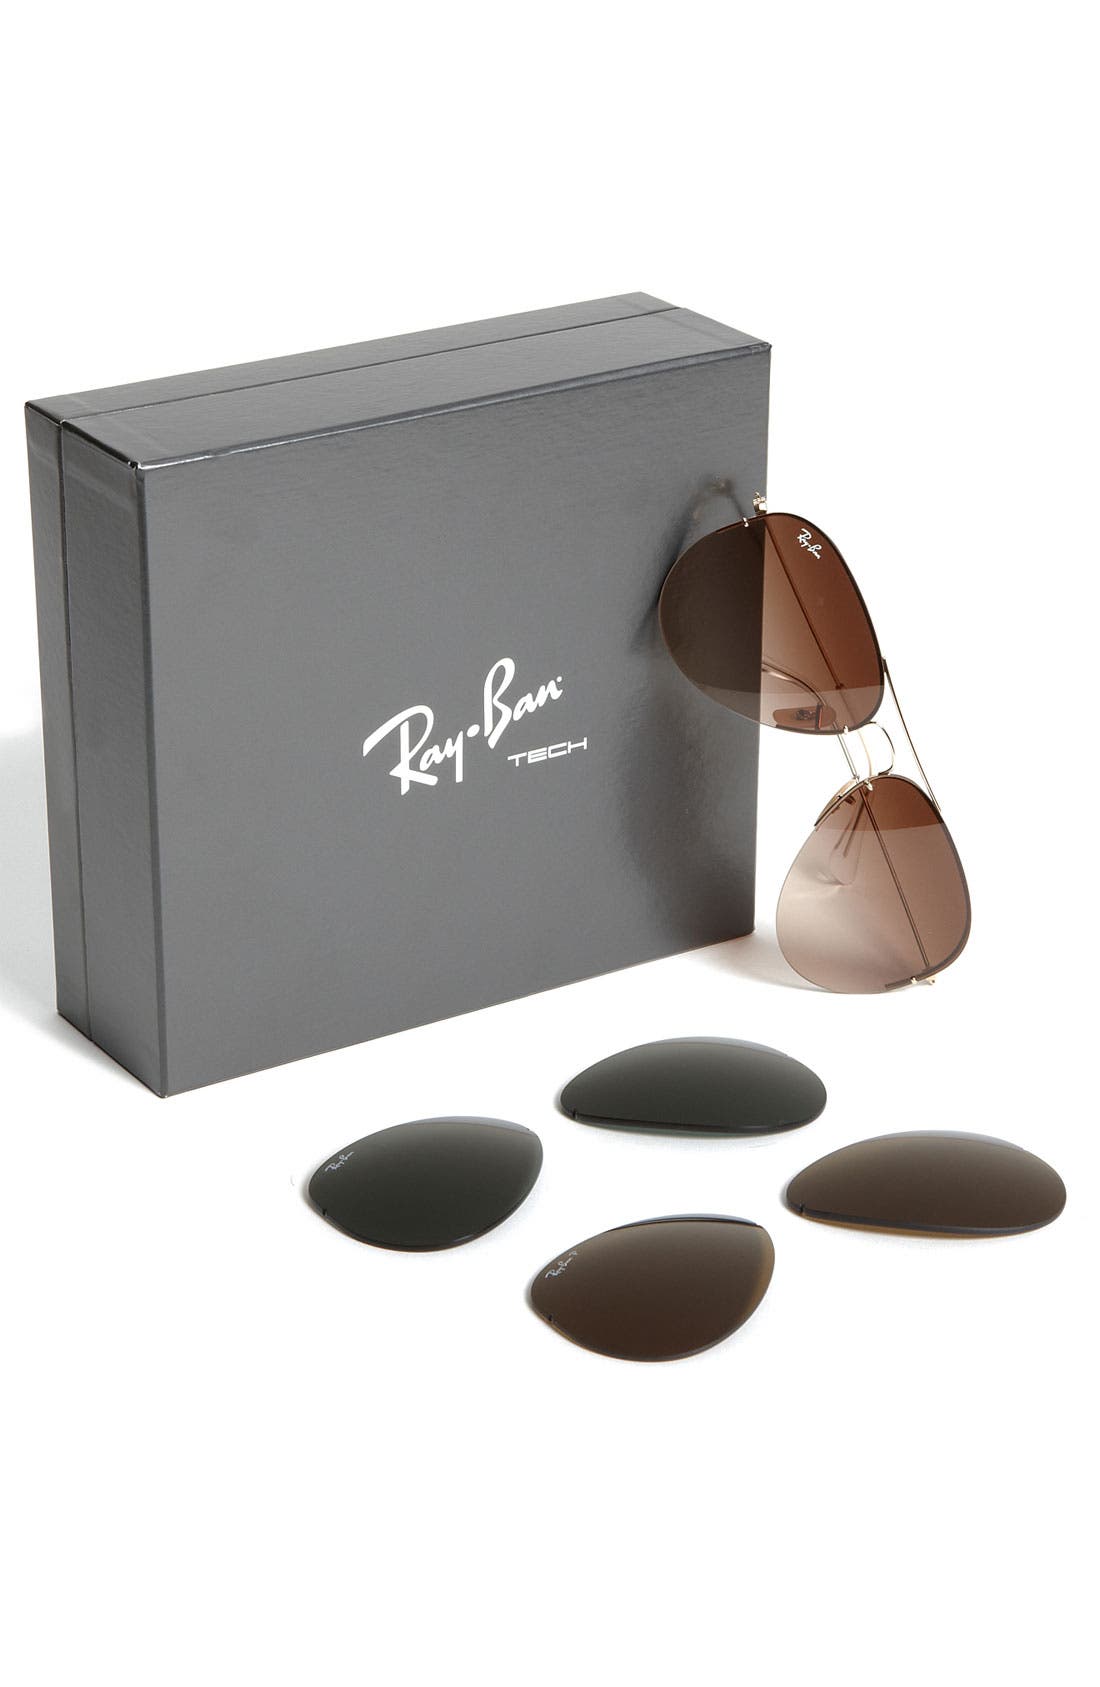 ray ban box set